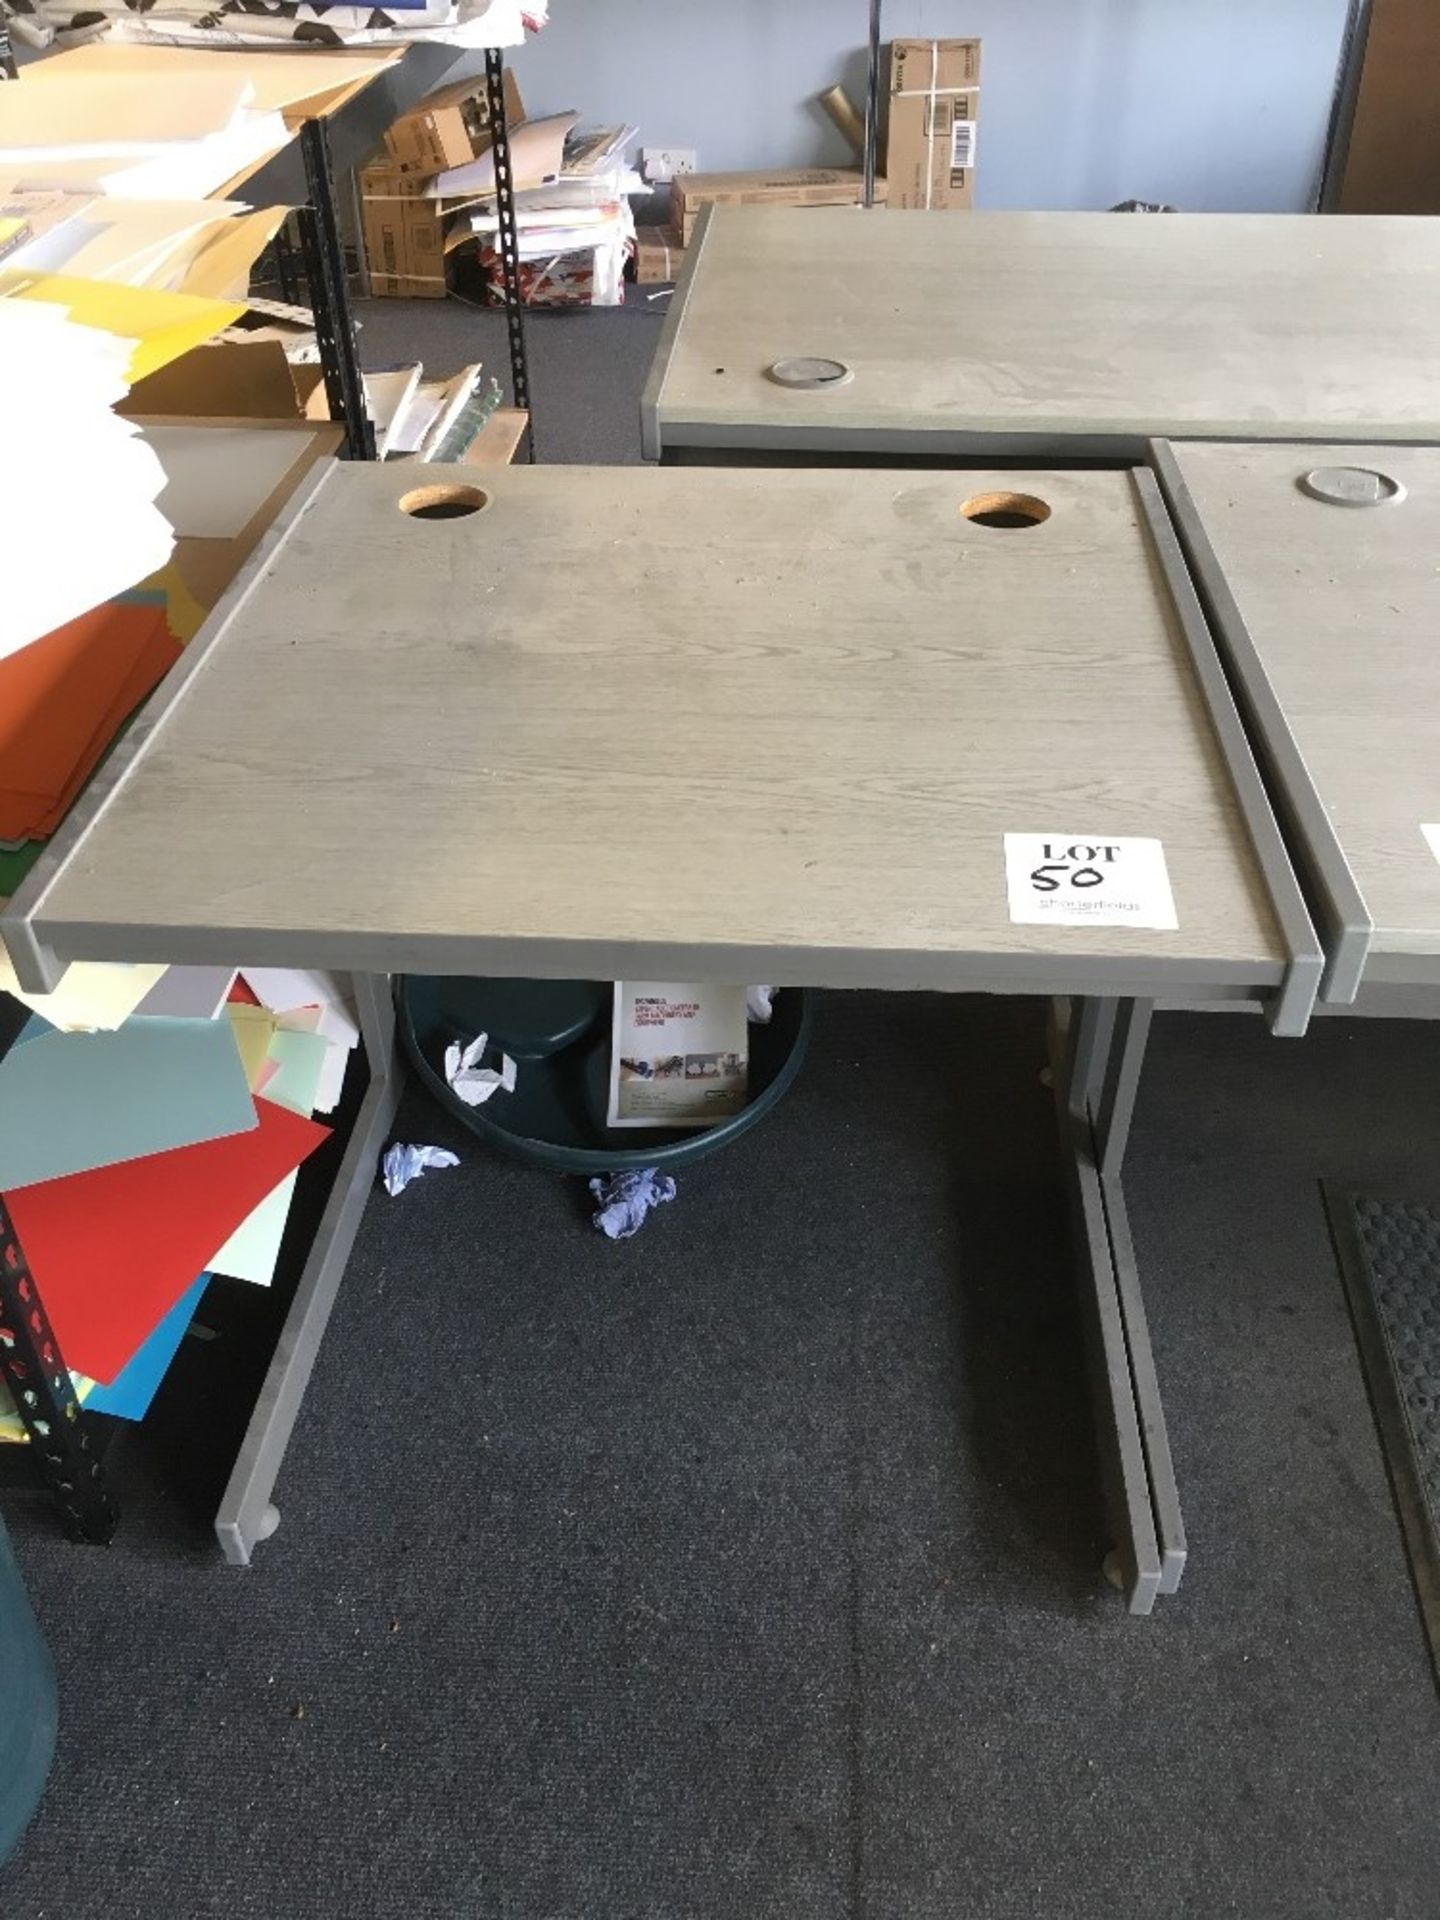 2 - 3 drawer standard desks (colour grey). 1 - Cantilever printer stand - Image 3 of 3